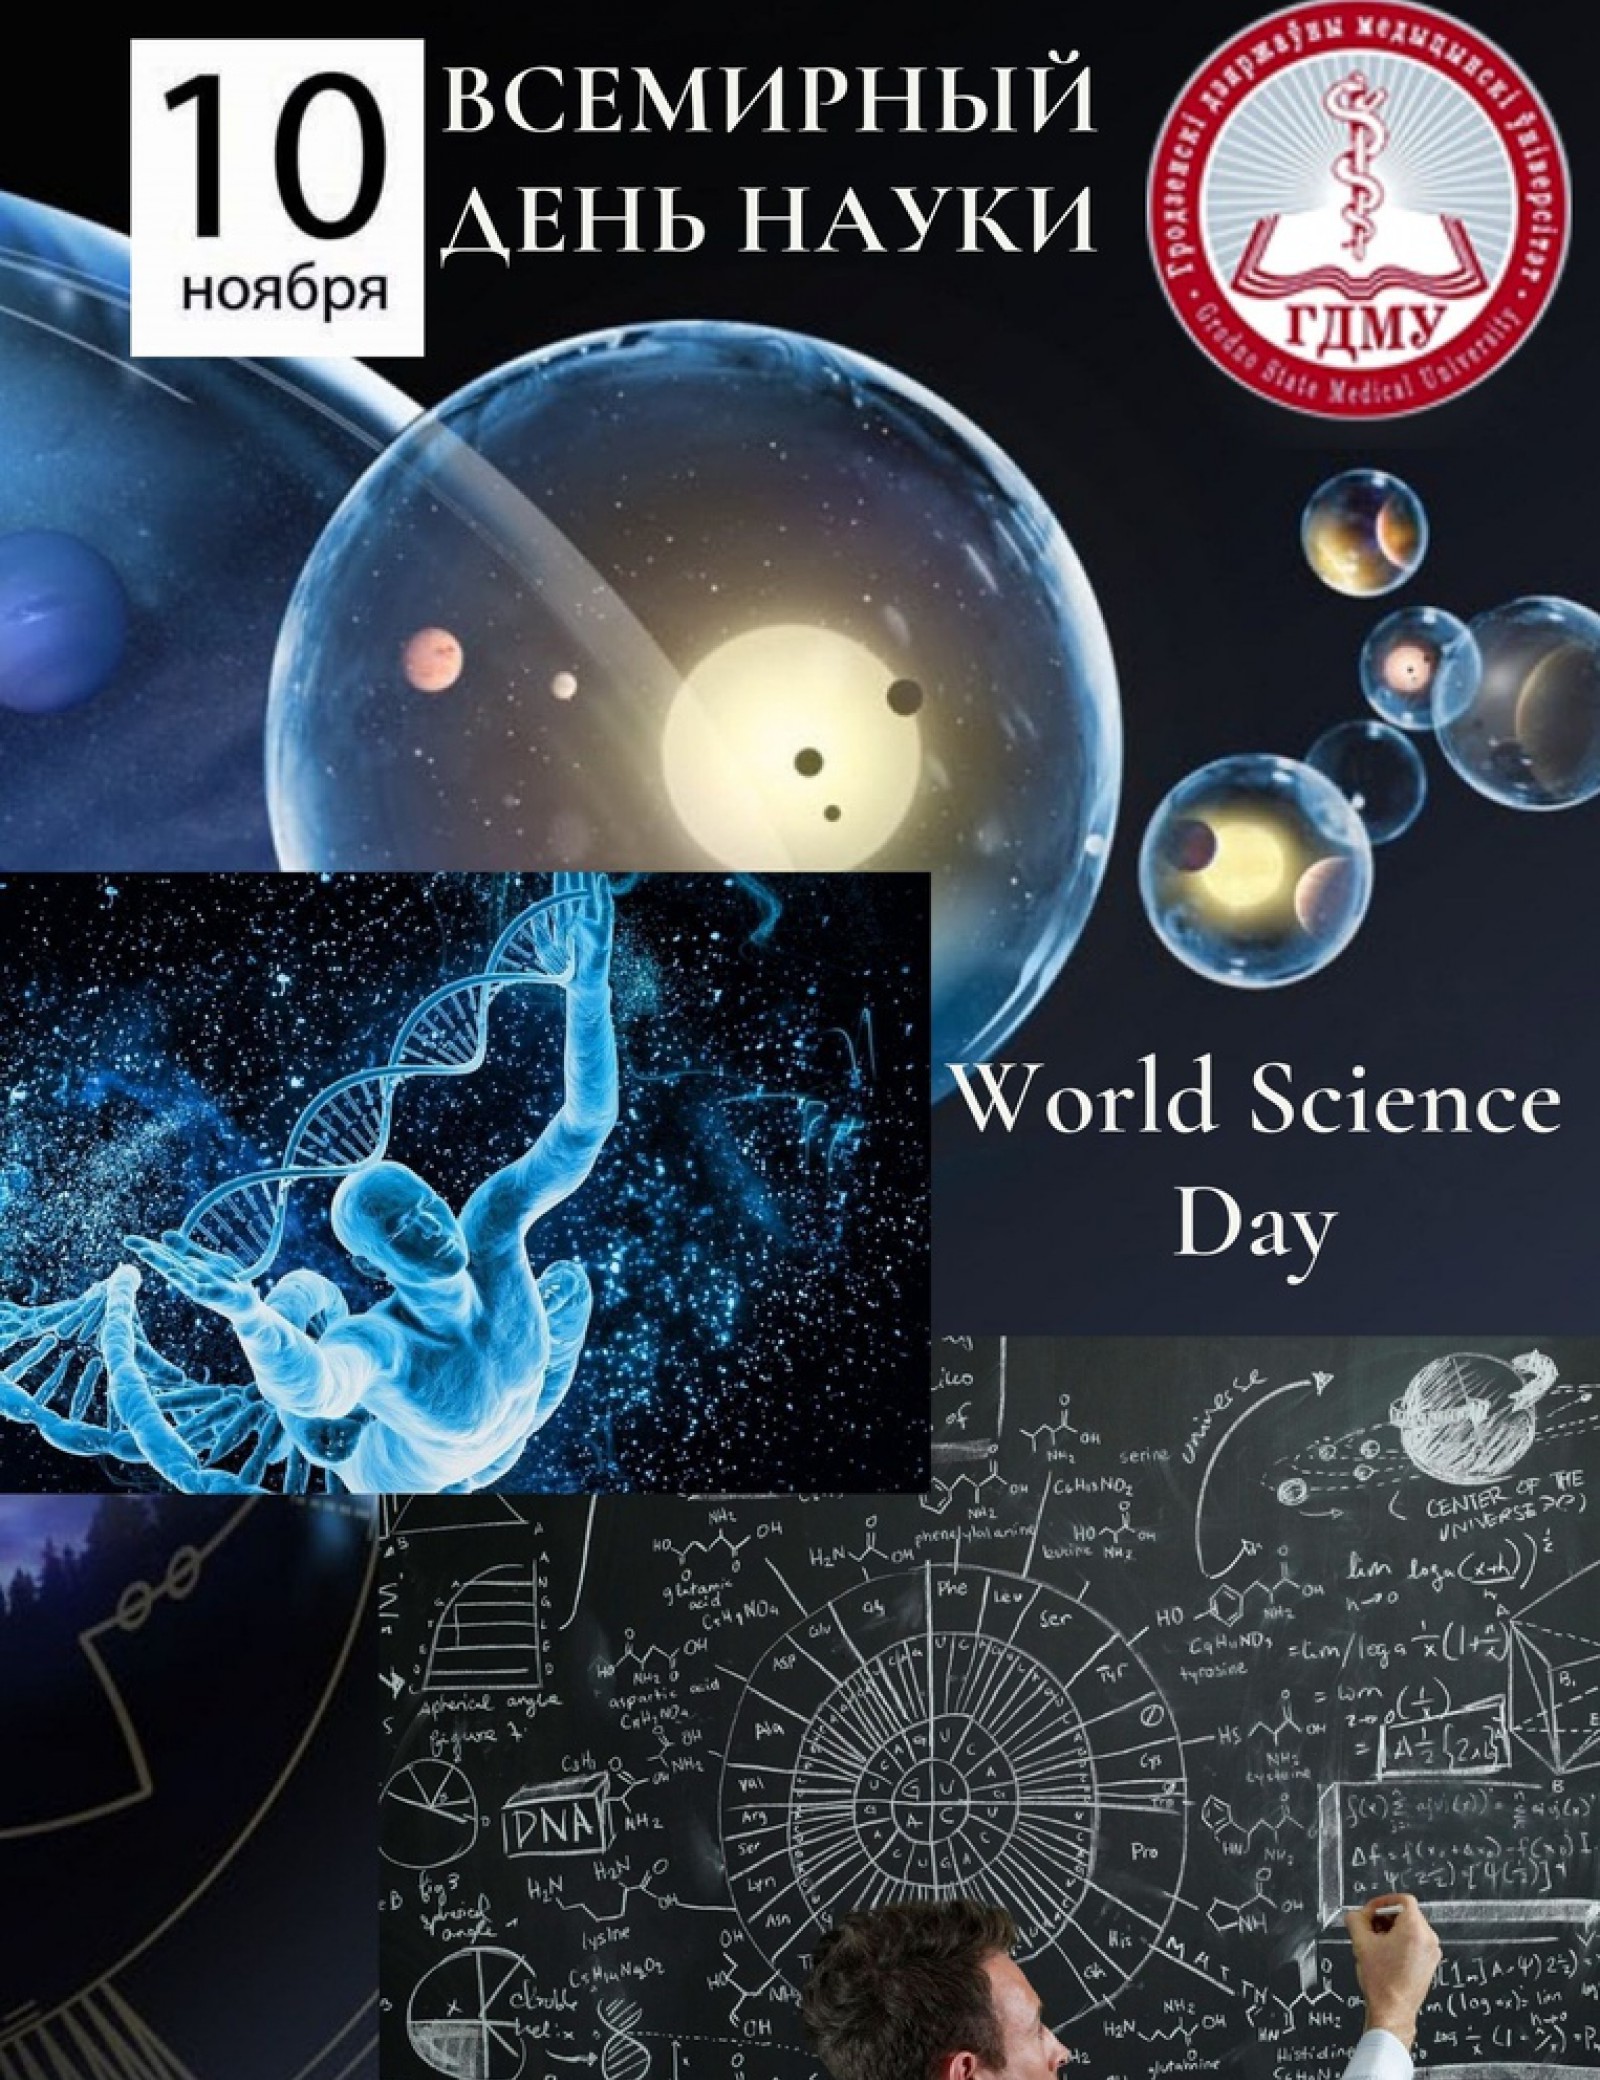 Всемирный день науки | Медицинский календарь | Пресс-центр | Гродненский  государственный медицинский университет